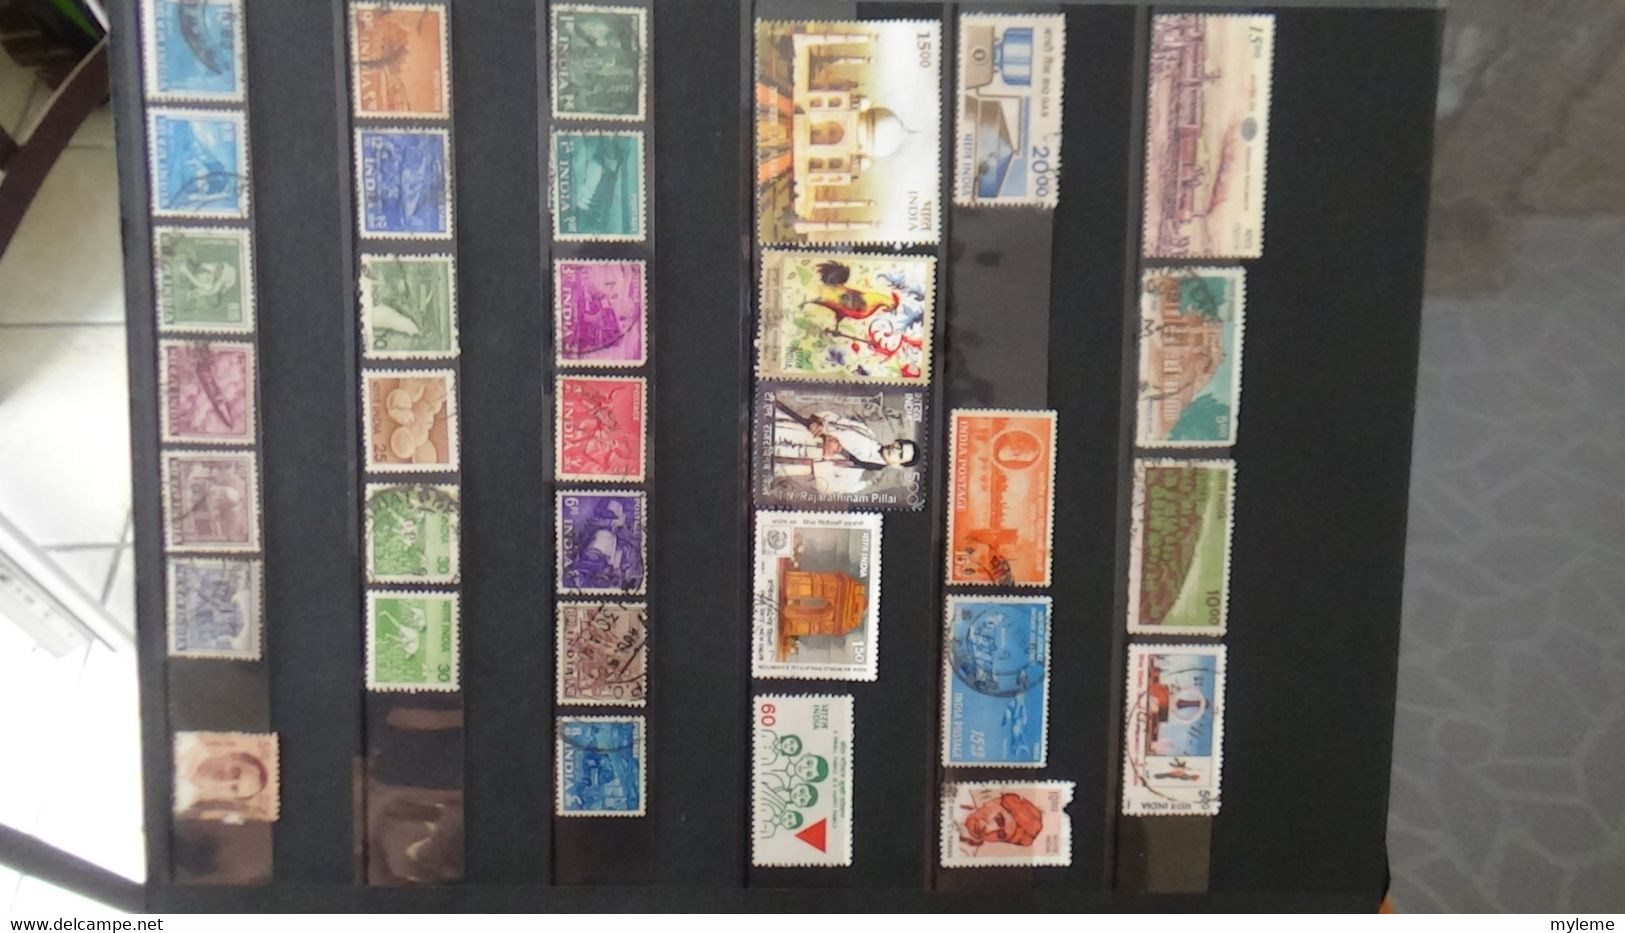 V65 Collection de timbres en majorité oblitérés de différents pays dont Ethiopie ...  A saisir !!!